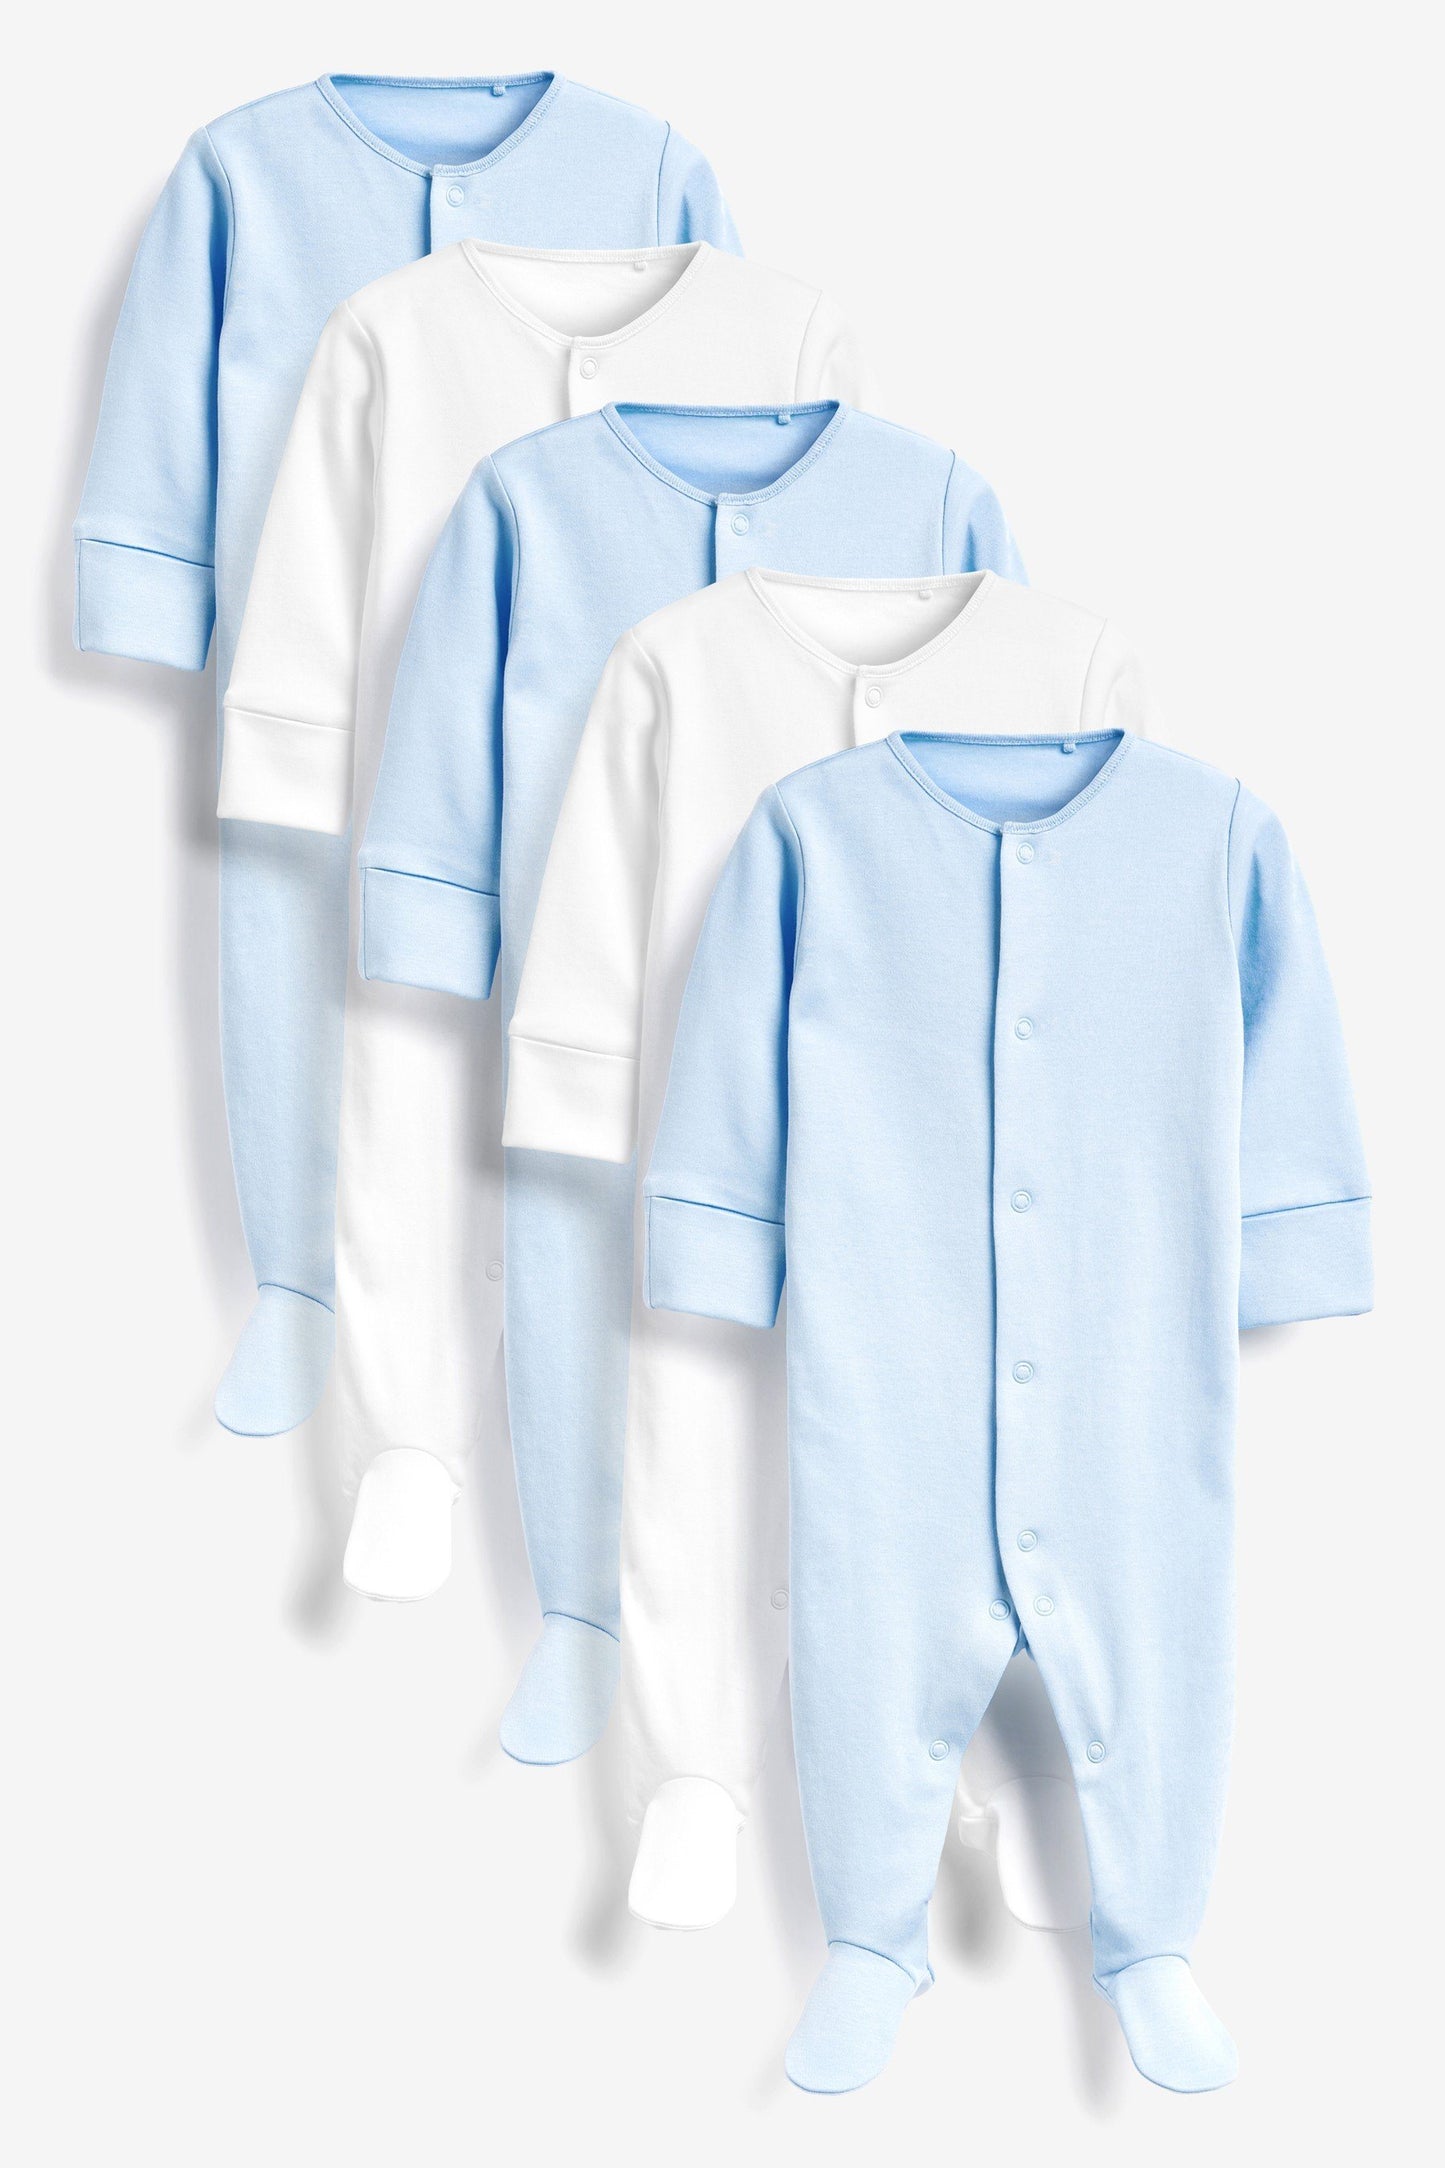 Meu Primeiro Guarda-Roupas - Macacões Azul/Branco - Kit com 5 ROUPA Anne Claire Baby Store Ltd. 